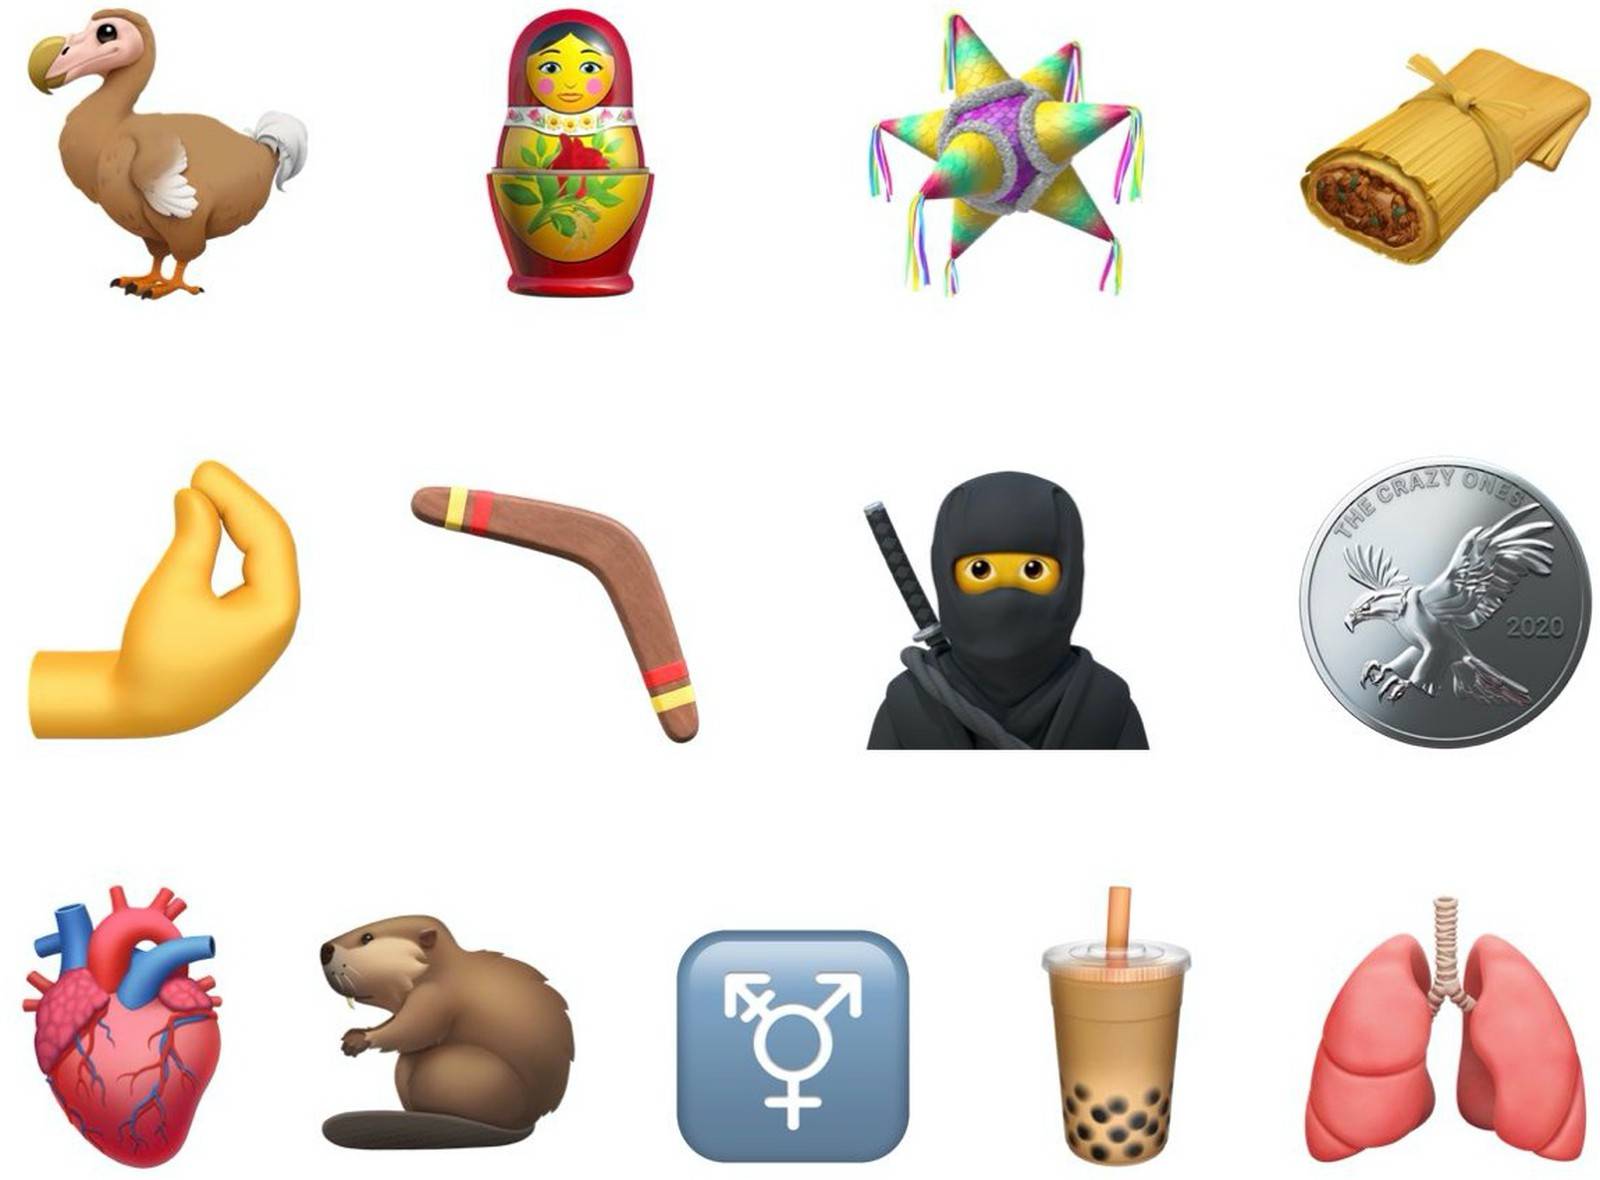 emoji|苹果公布最新emoji表情符号 珍珠奶茶也能用符号表达了